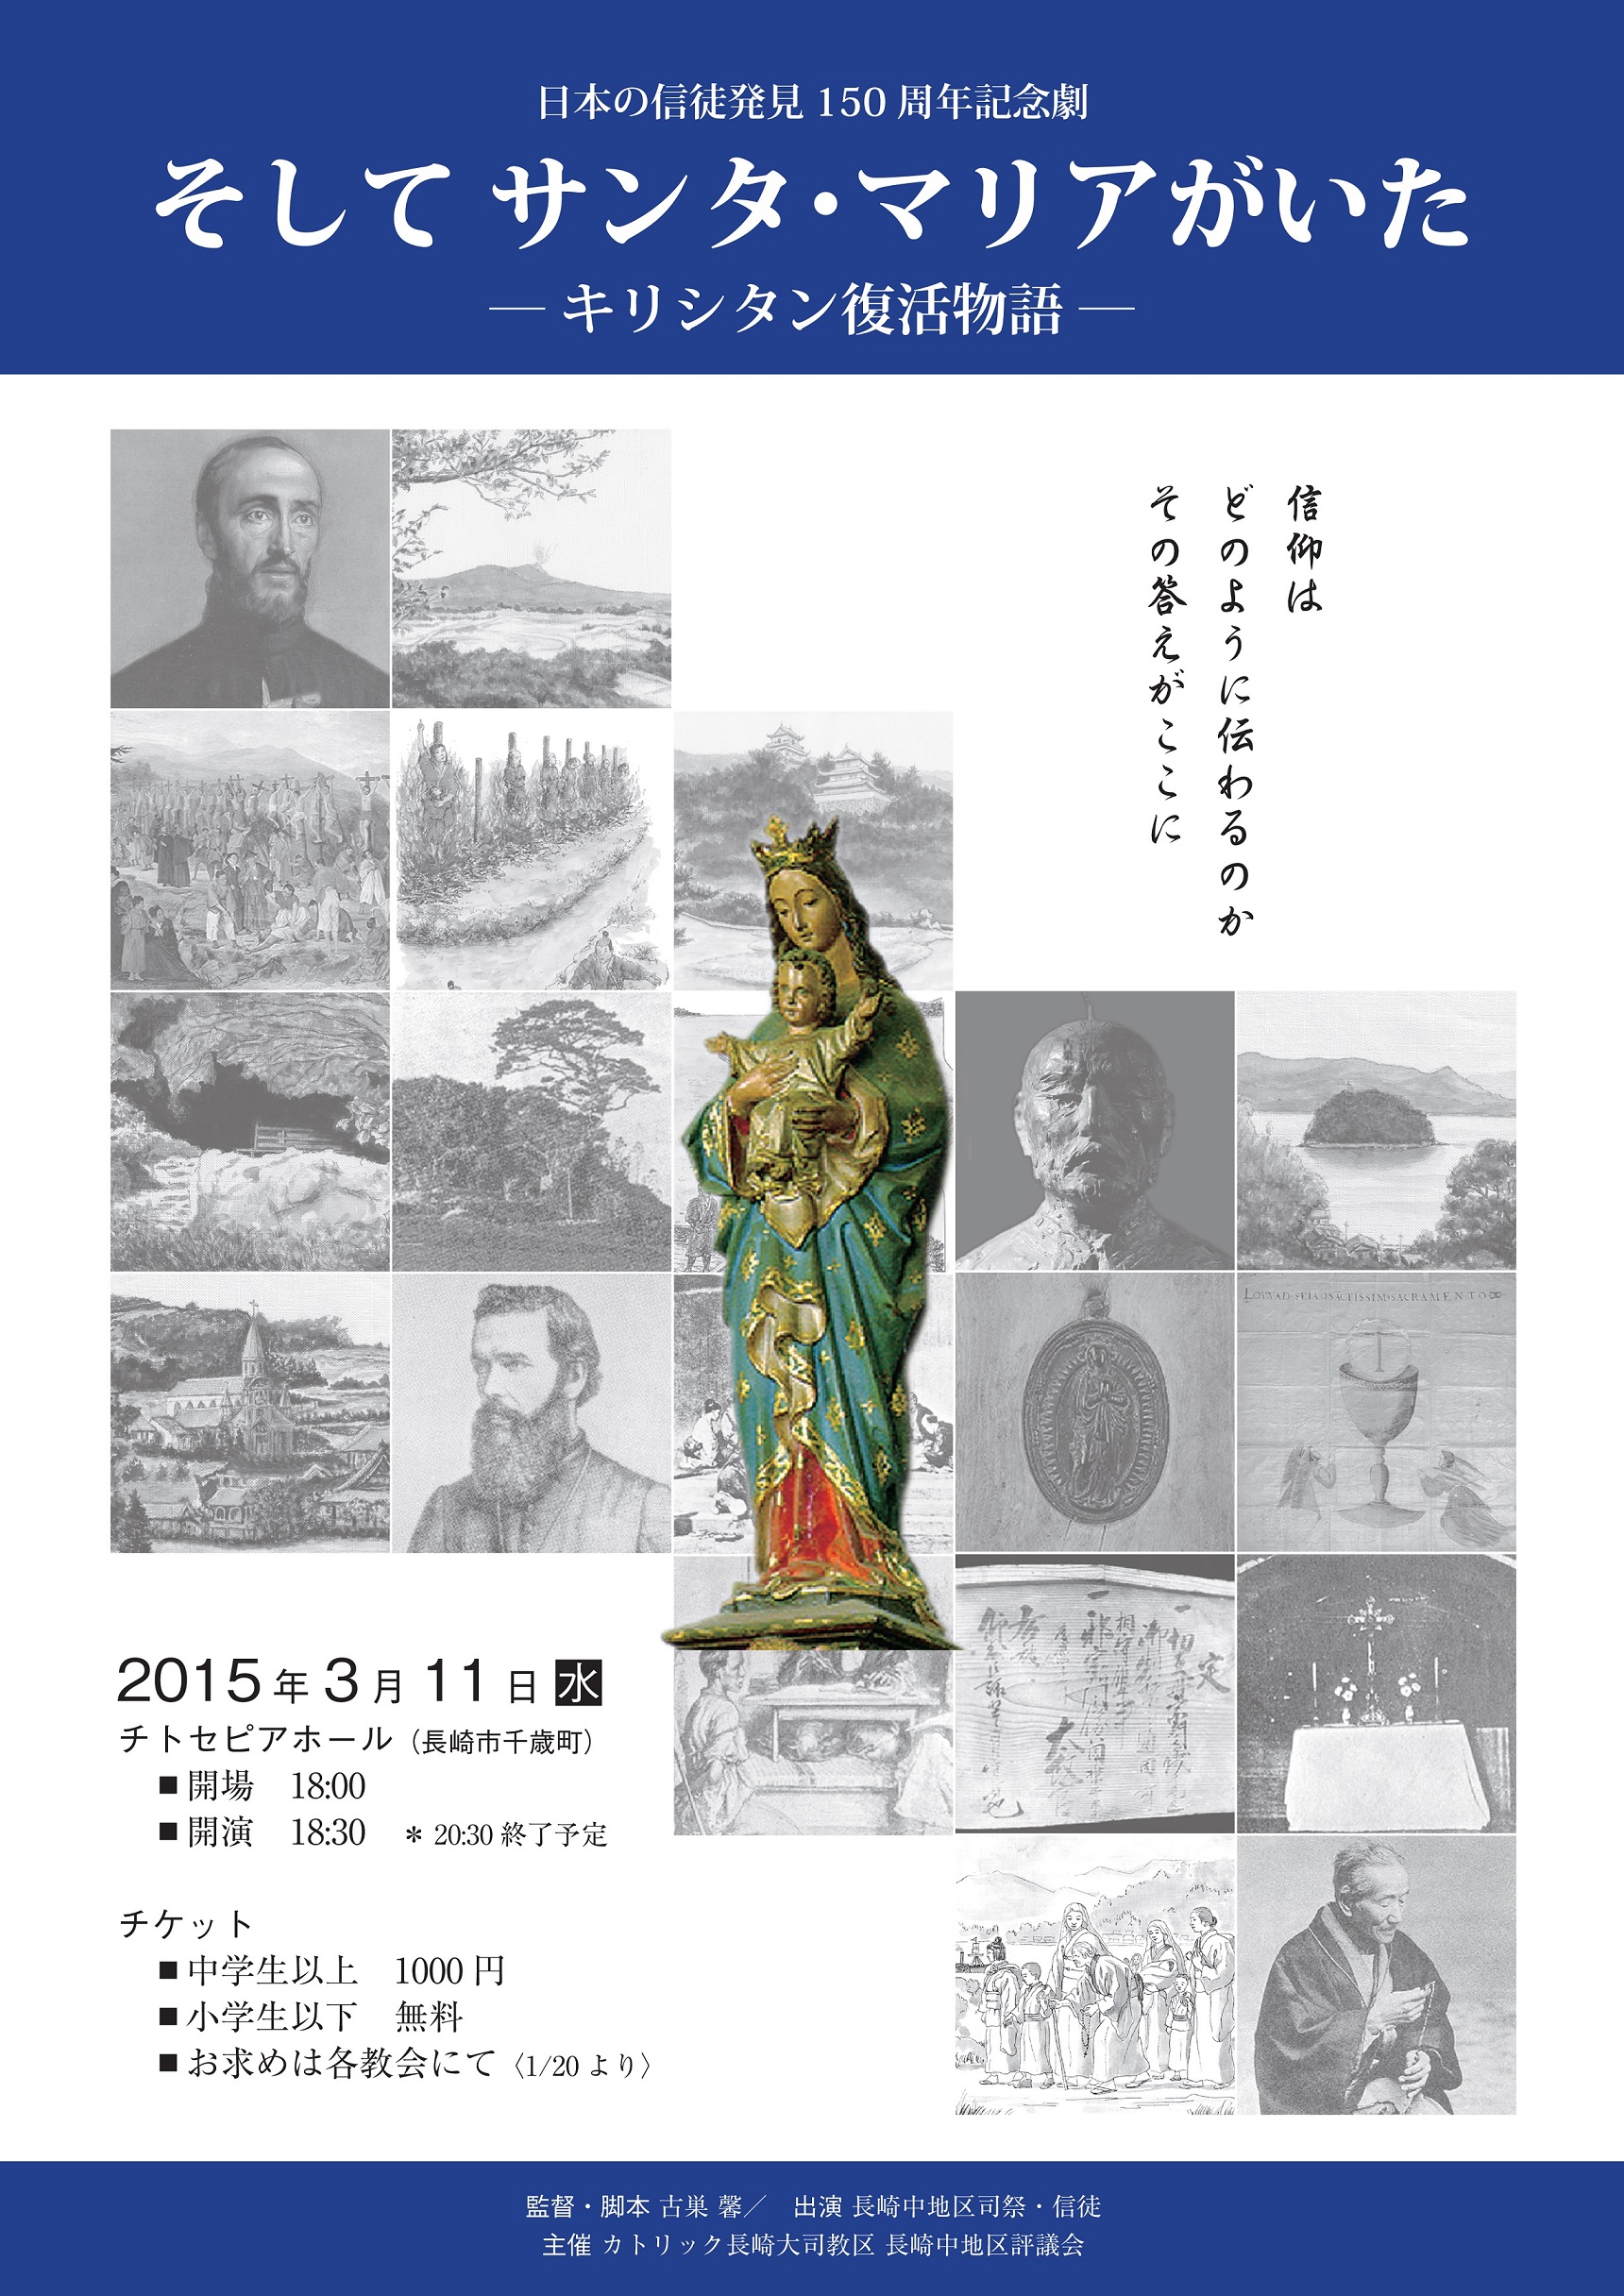 日本の信徒発見150周年記念関連 1 15更新 記念劇 そして サンタ マリアがいた キリシタン復活物語 公演のお知らせ 公演は終了しました カトリック長崎大司教区